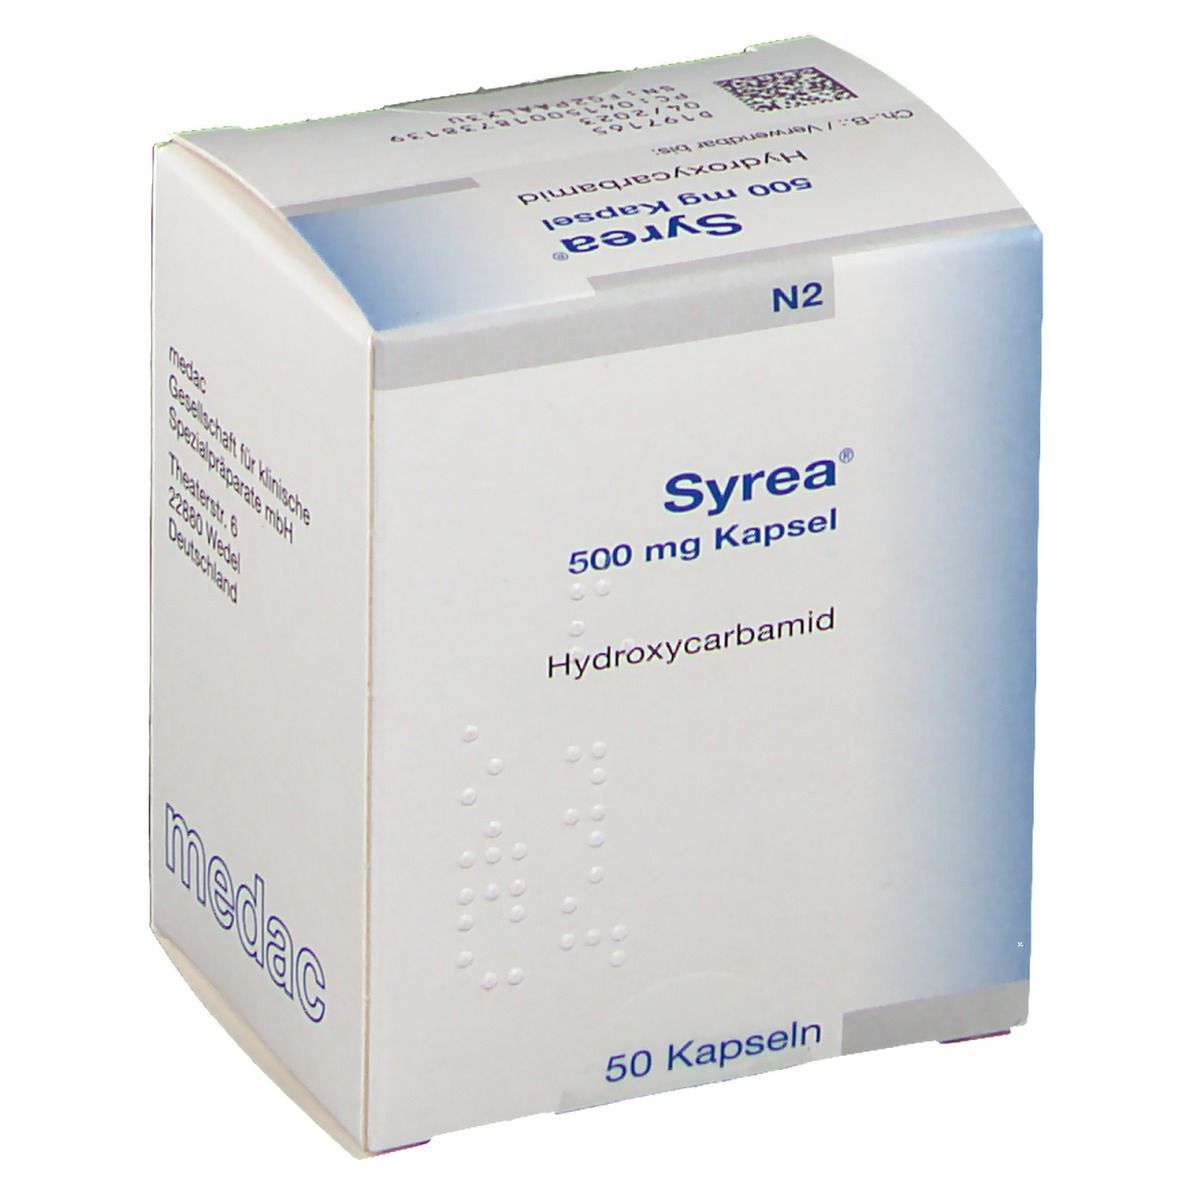 Syrea® 500 mg